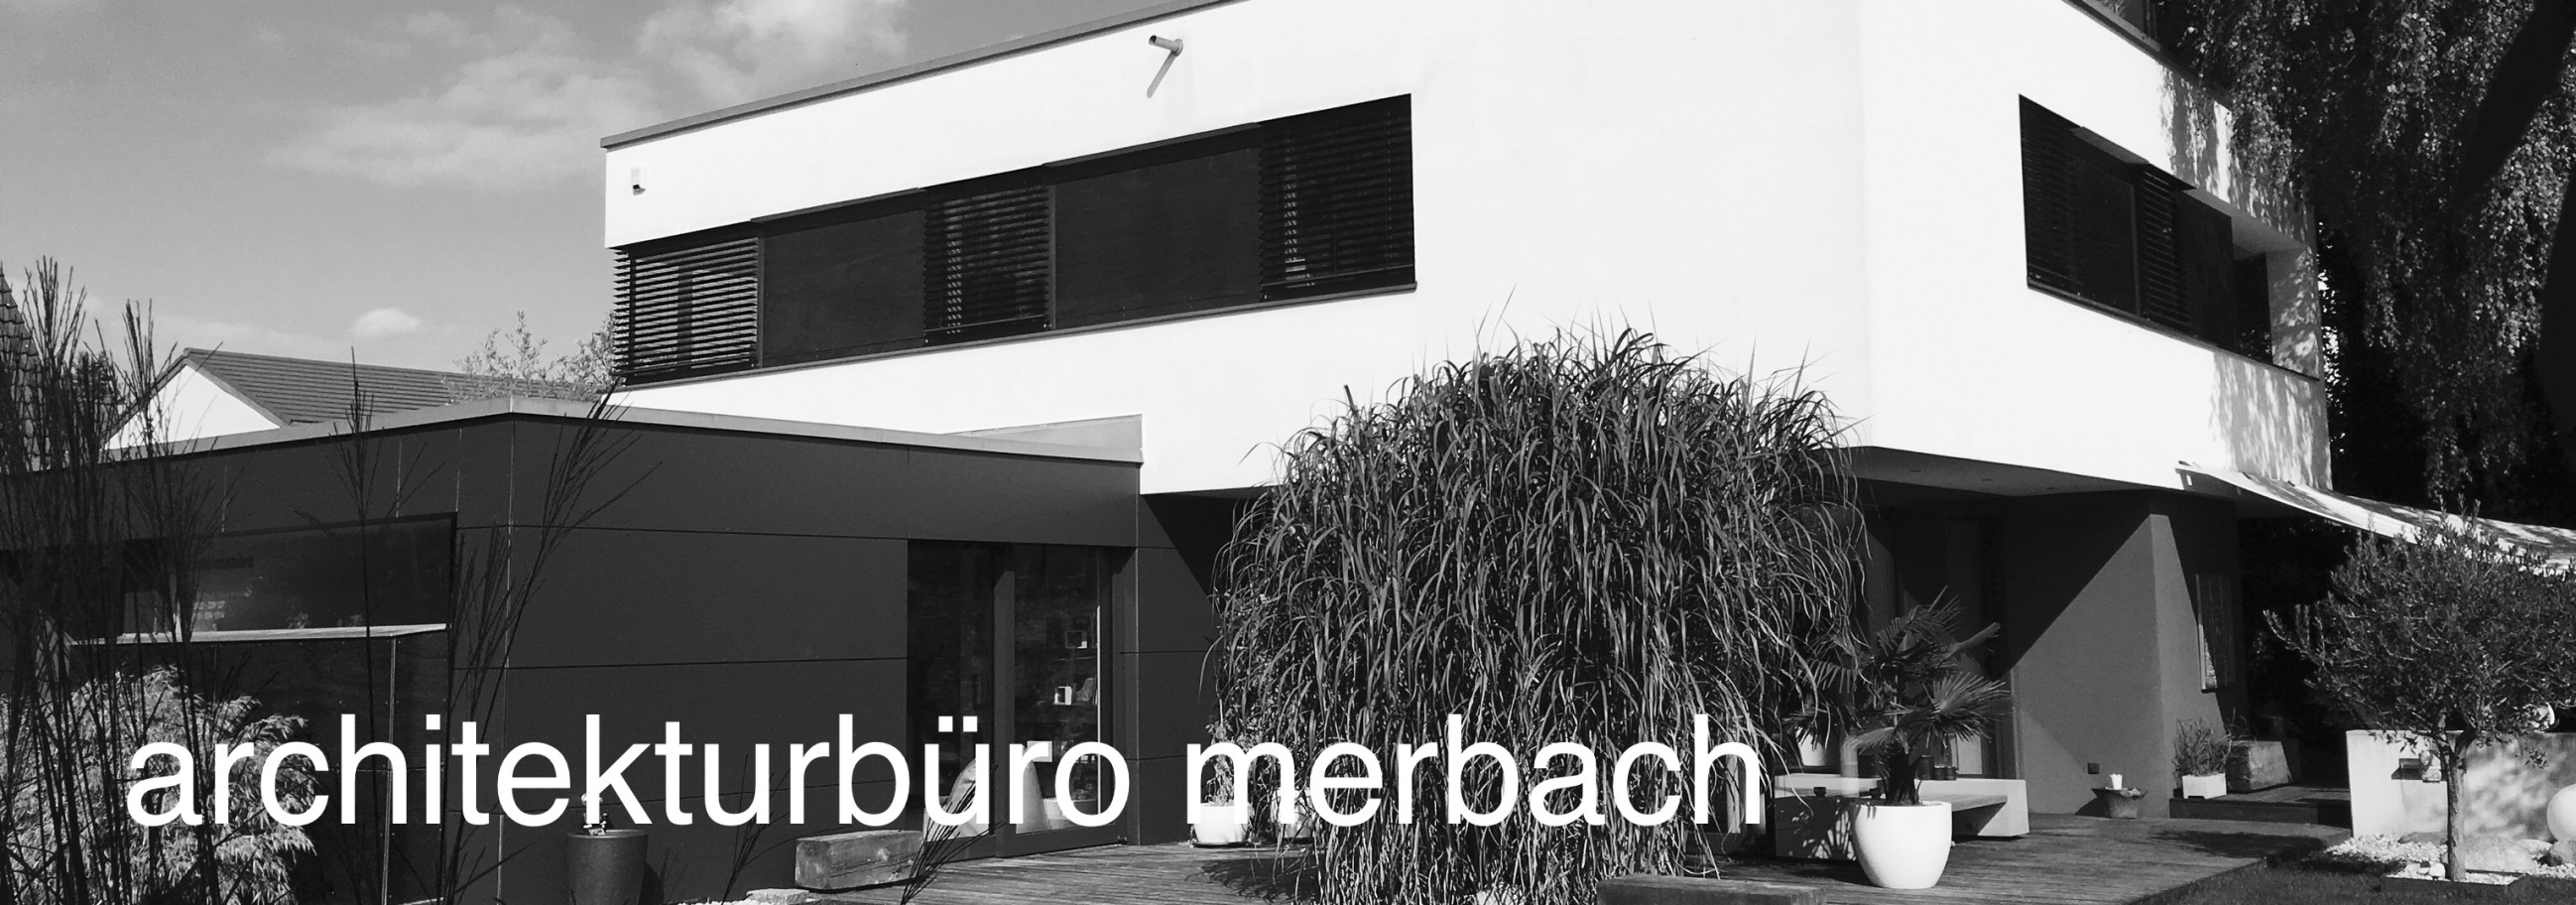 (c) Architektur-merbach.de